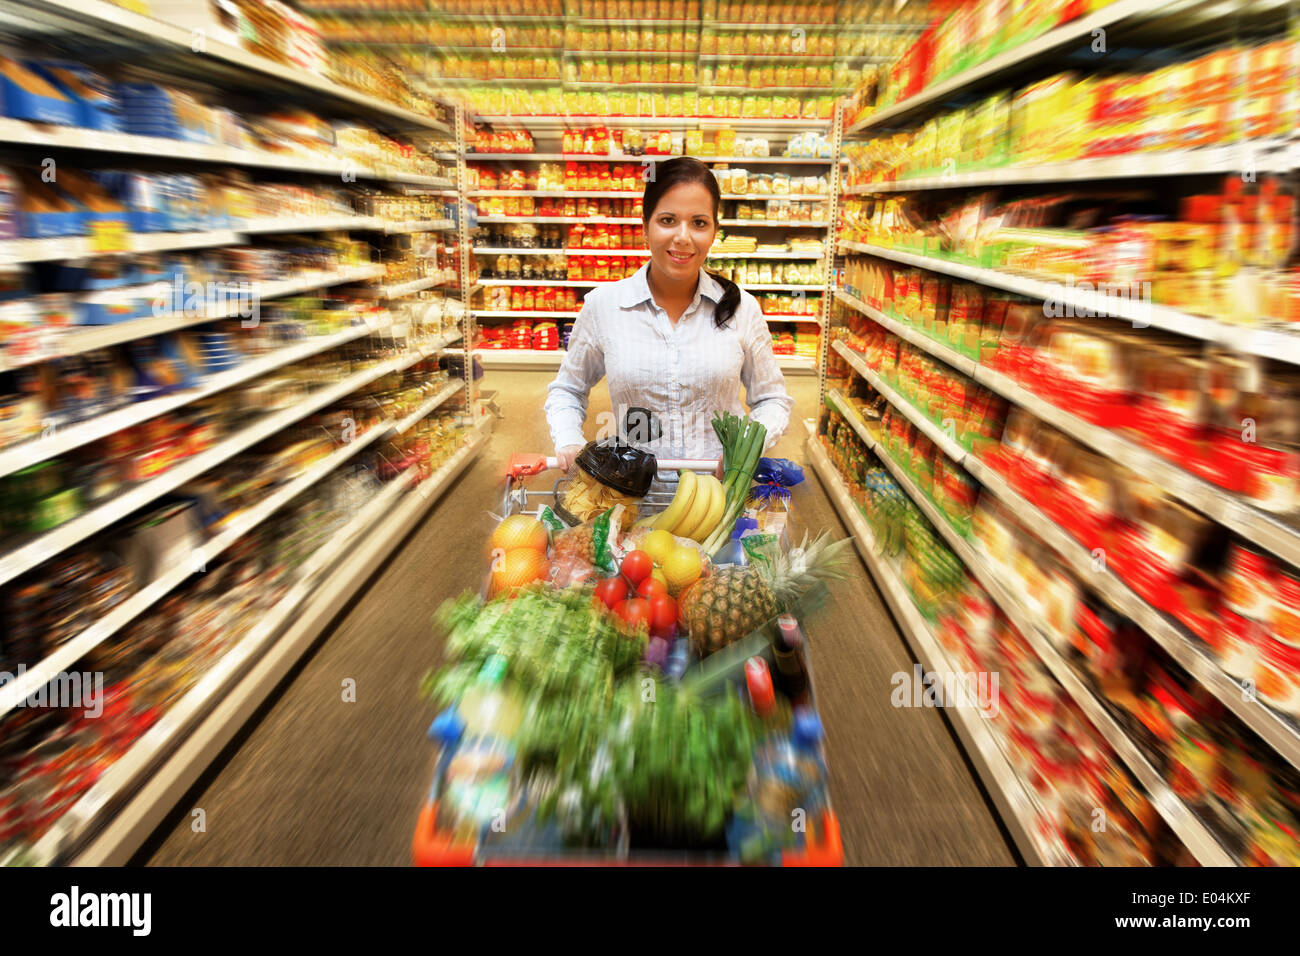 La donna acquista il cibo fresco in un supermercato, Frau kauft in einem Supermarkt frische Lebensmittel ein Foto Stock